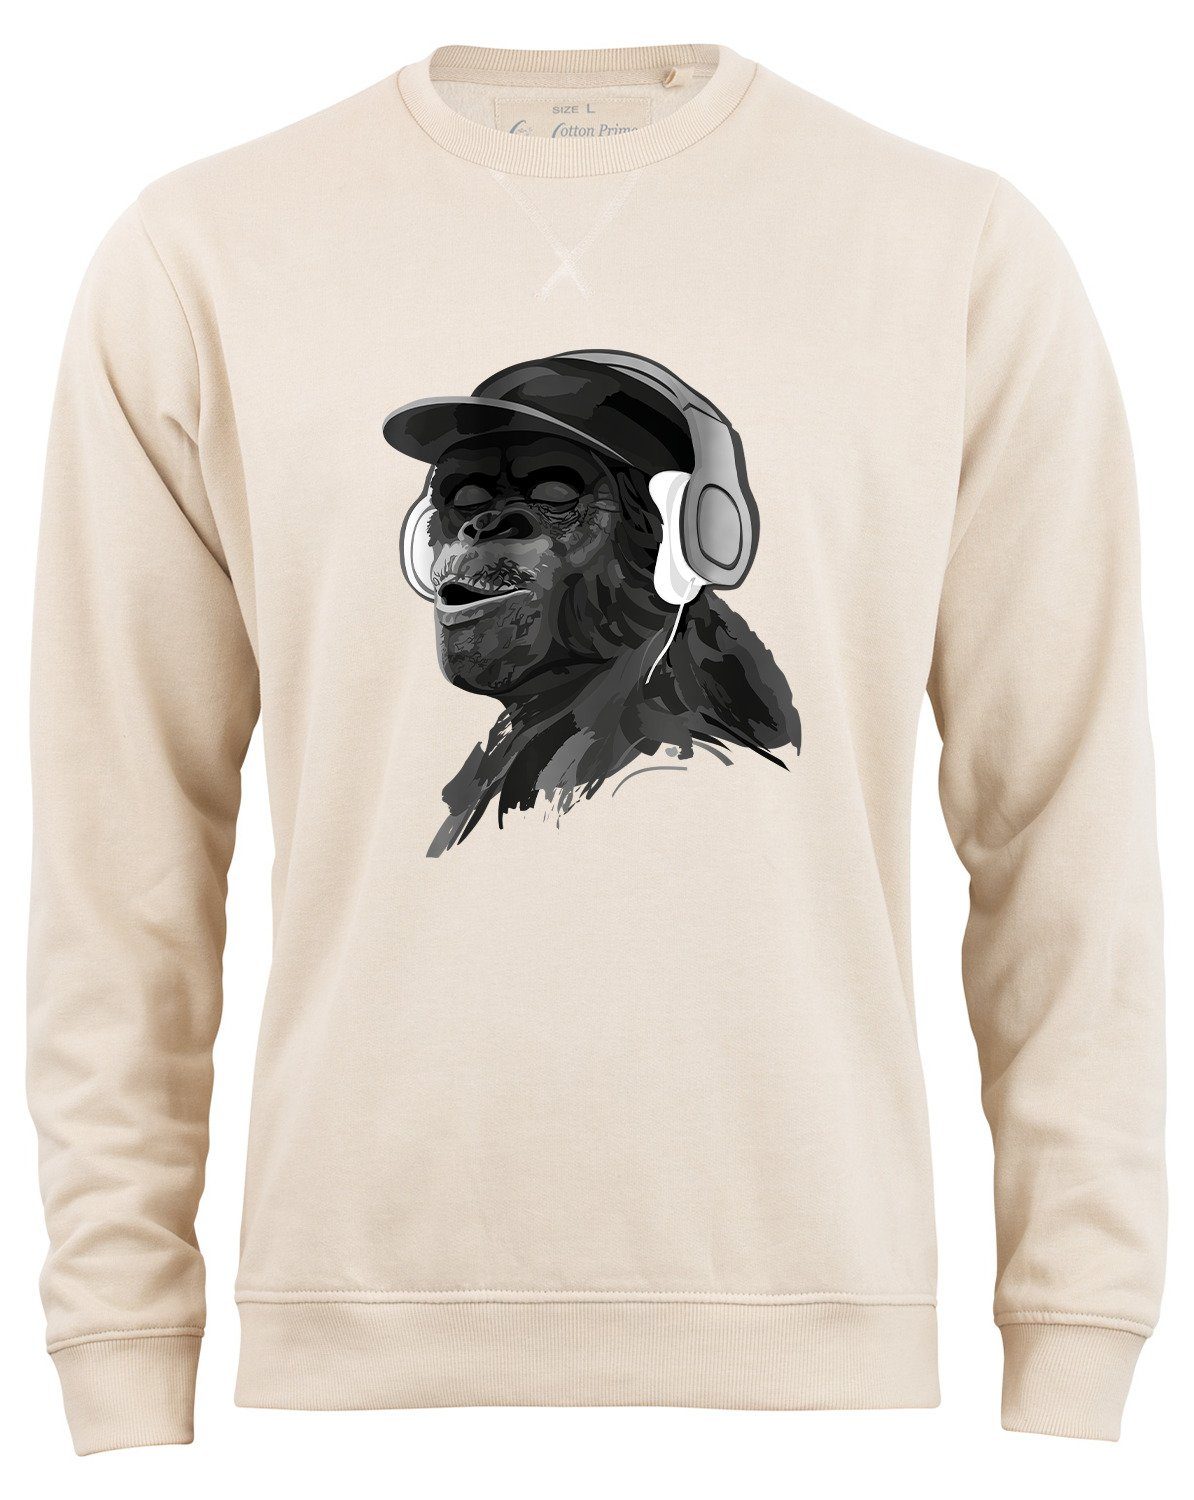 Cotton Prime® Sweatshirt Monkey mit DJ-Kopfhörer mit weichem Innenfleece Beige